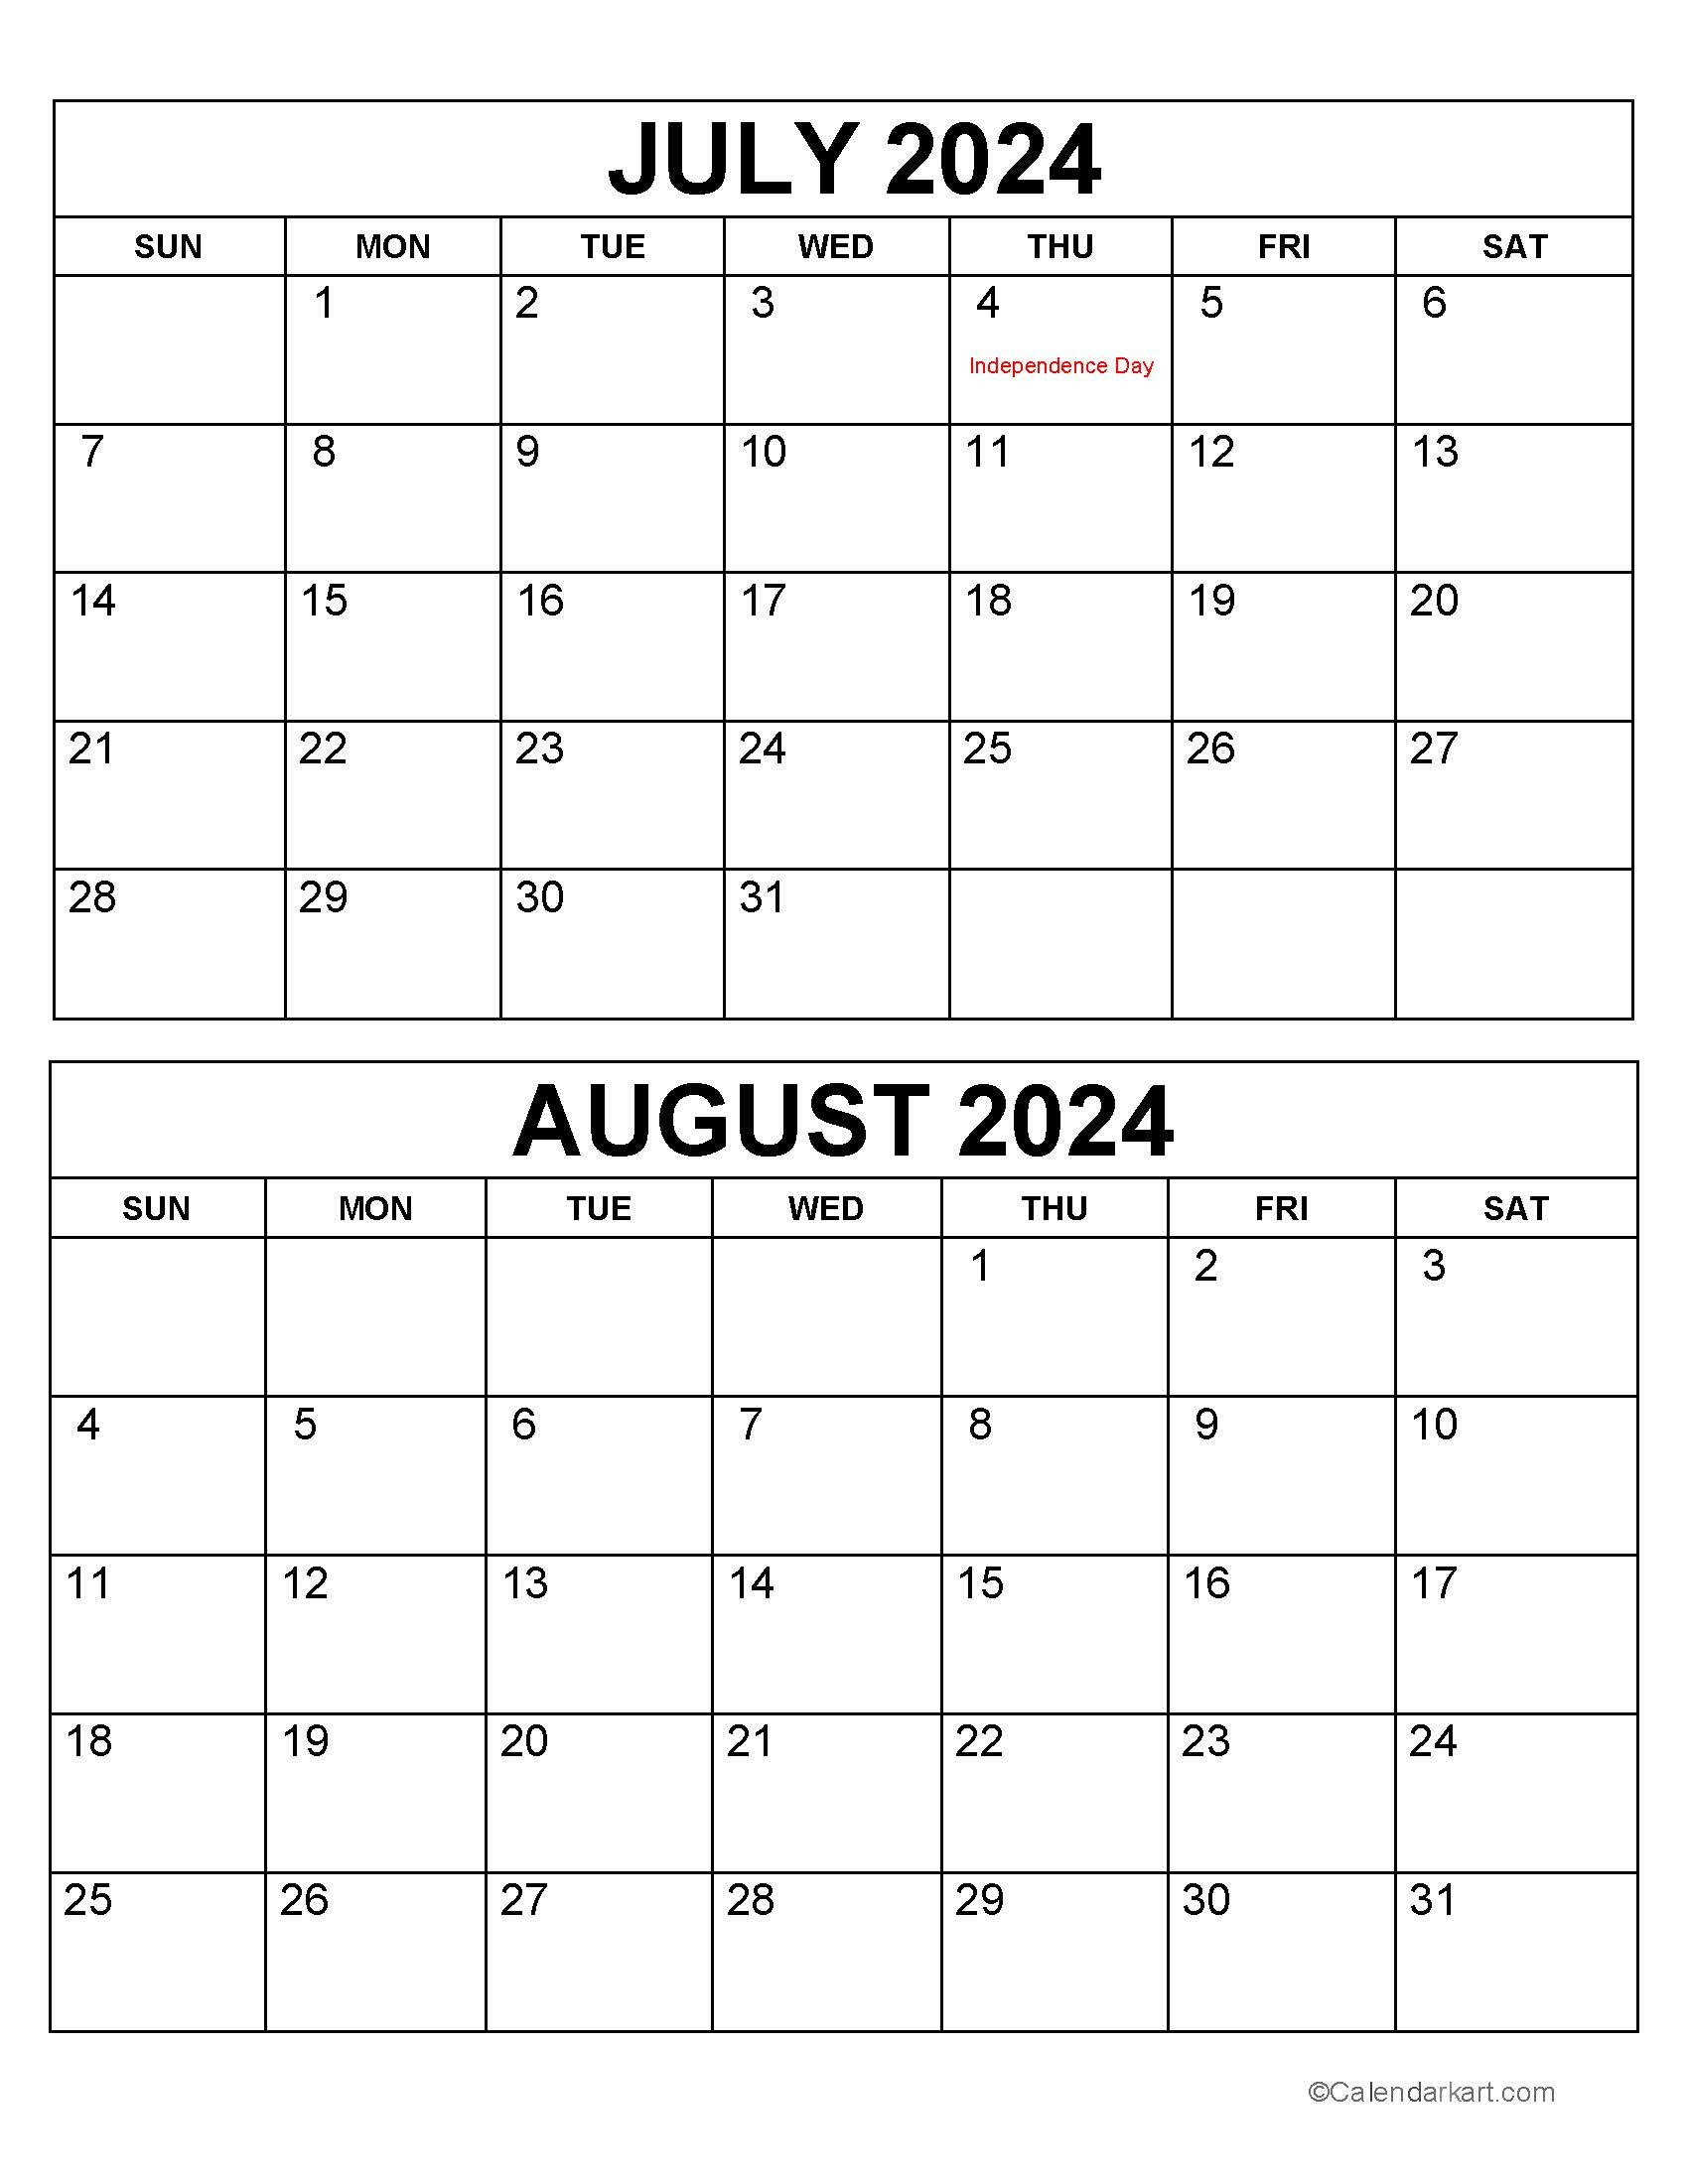 Printable July August 2024 Calendar | Calendarkart throughout July August 2024 Calendar